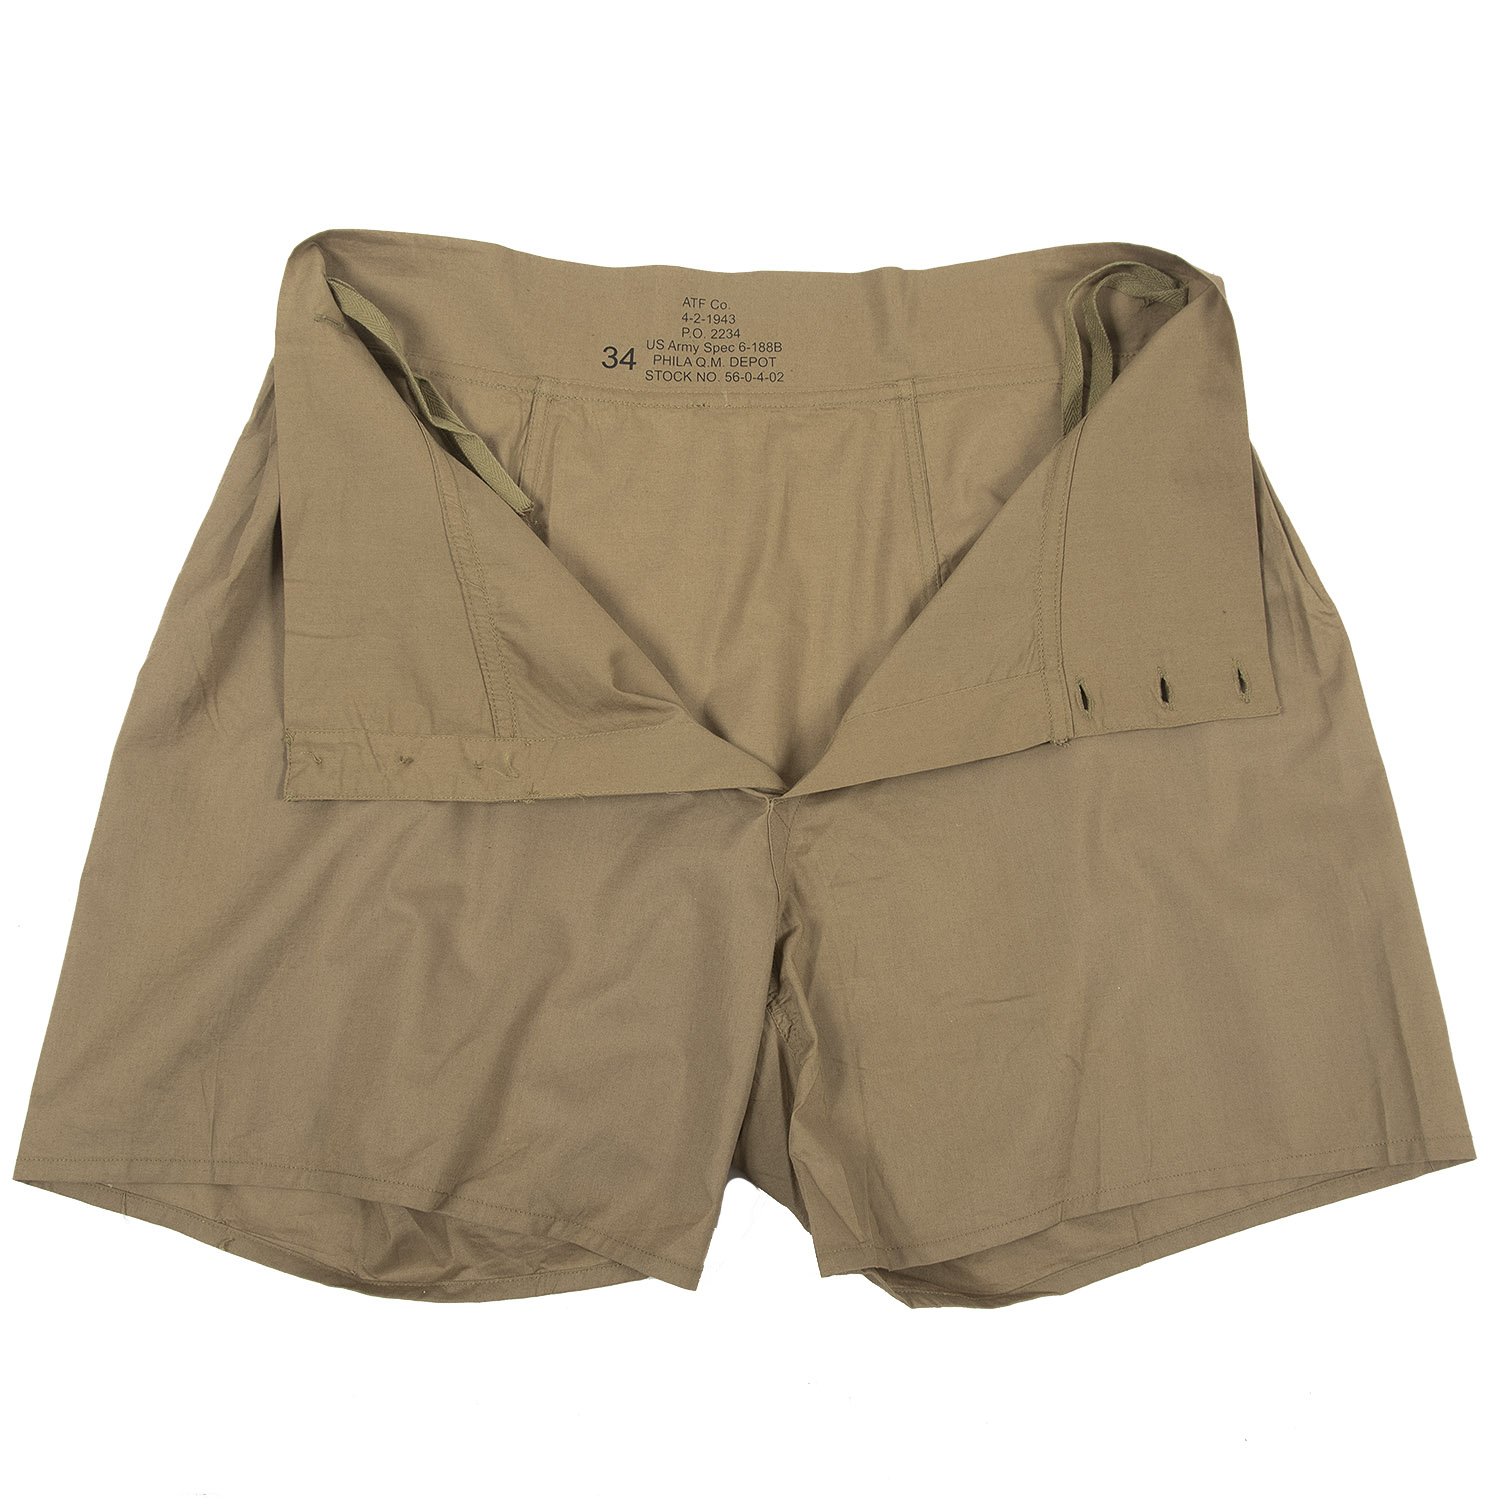 US Army Boxer Shorts